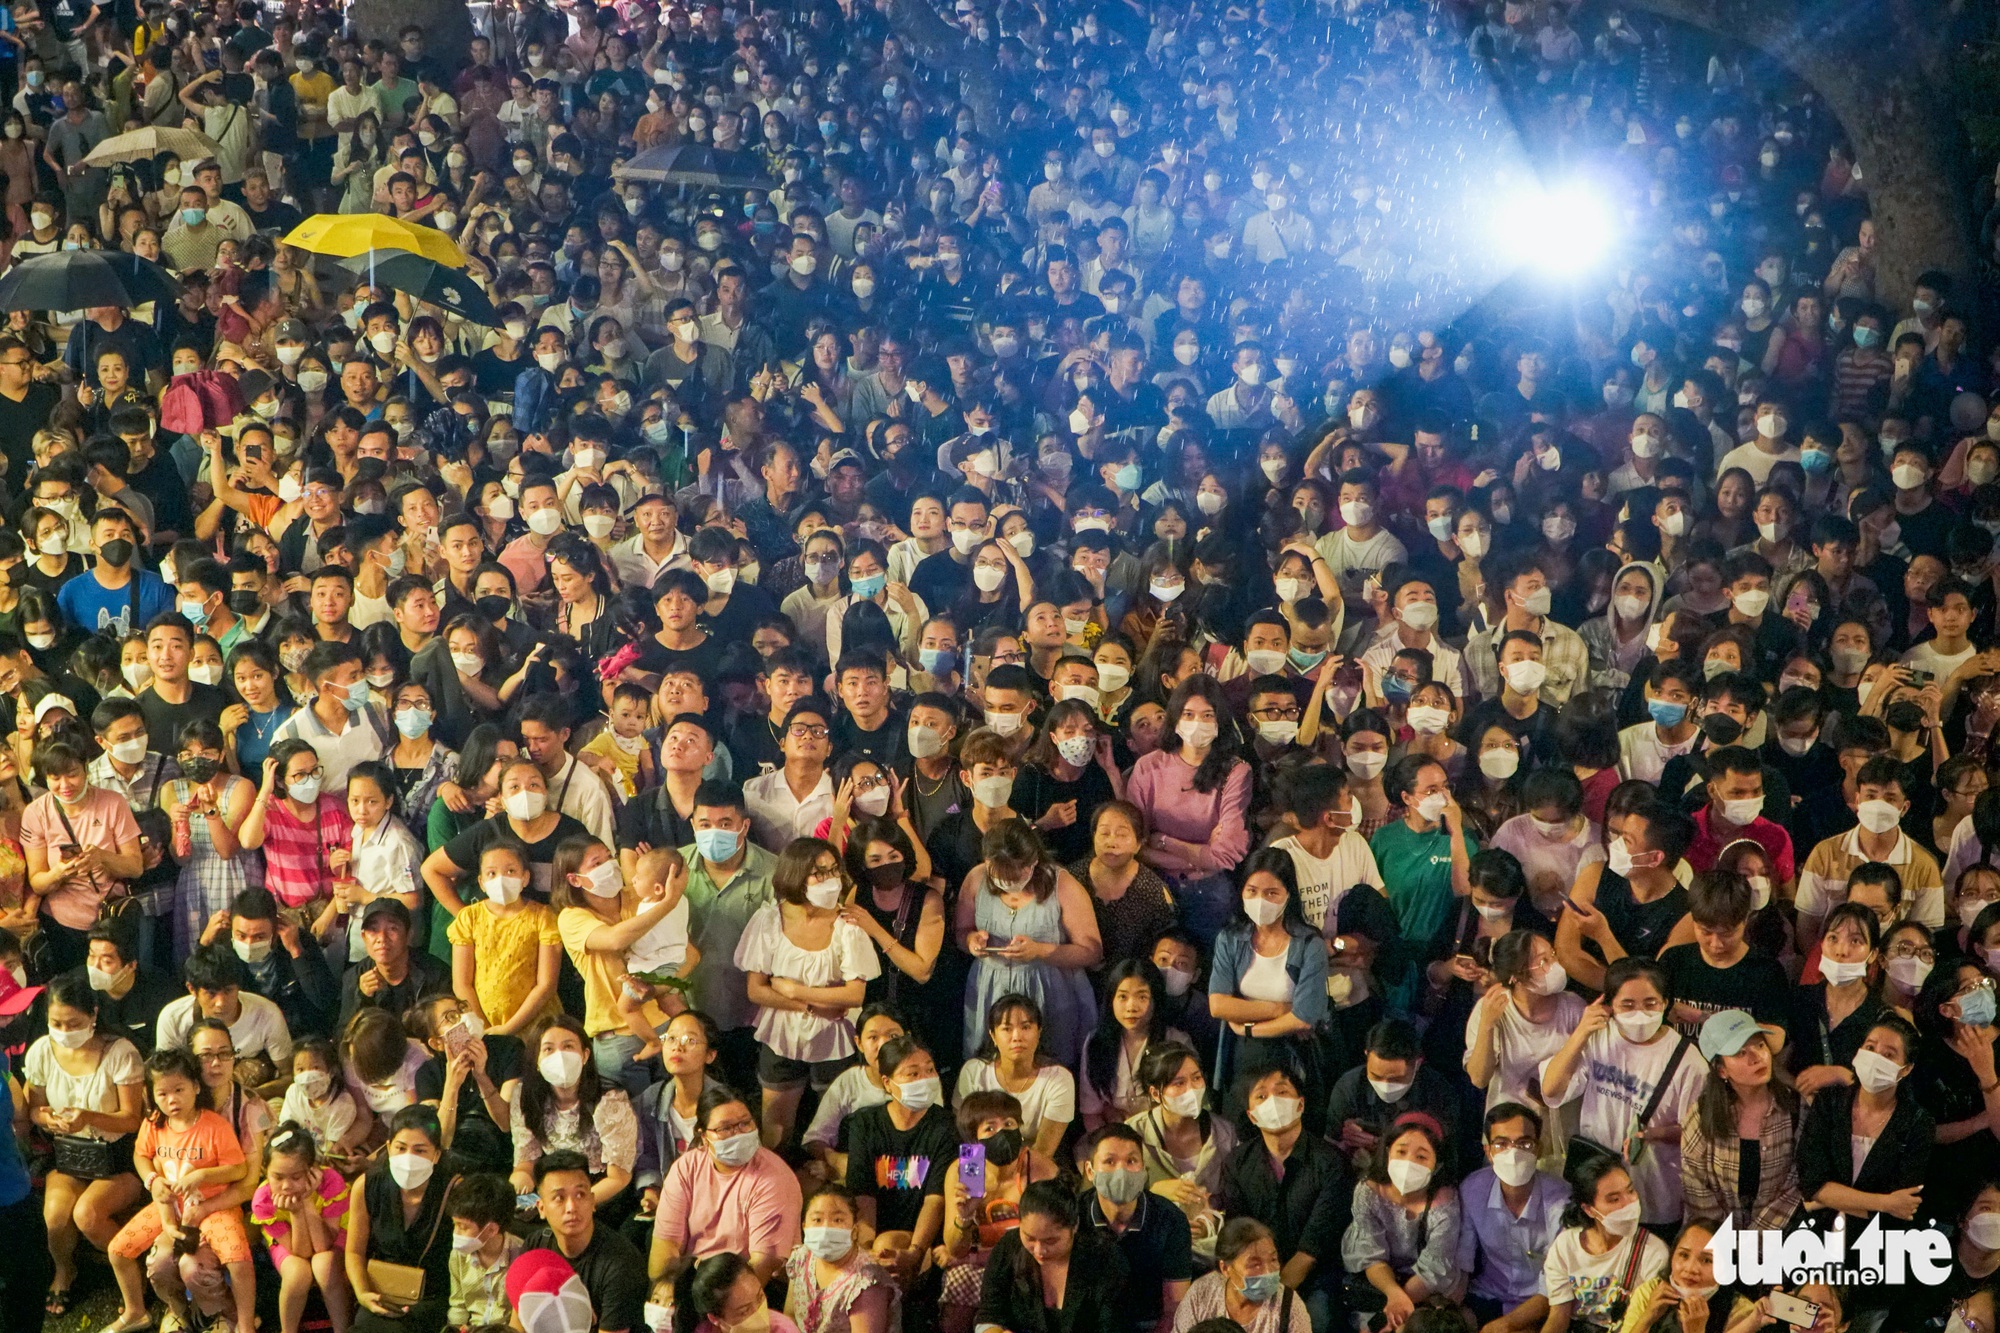 Hàng ngàn khán giả đổ về Hoàn Kiếm, Tuấn Hưng khóc ở live show Góc ban công - Ảnh 2.